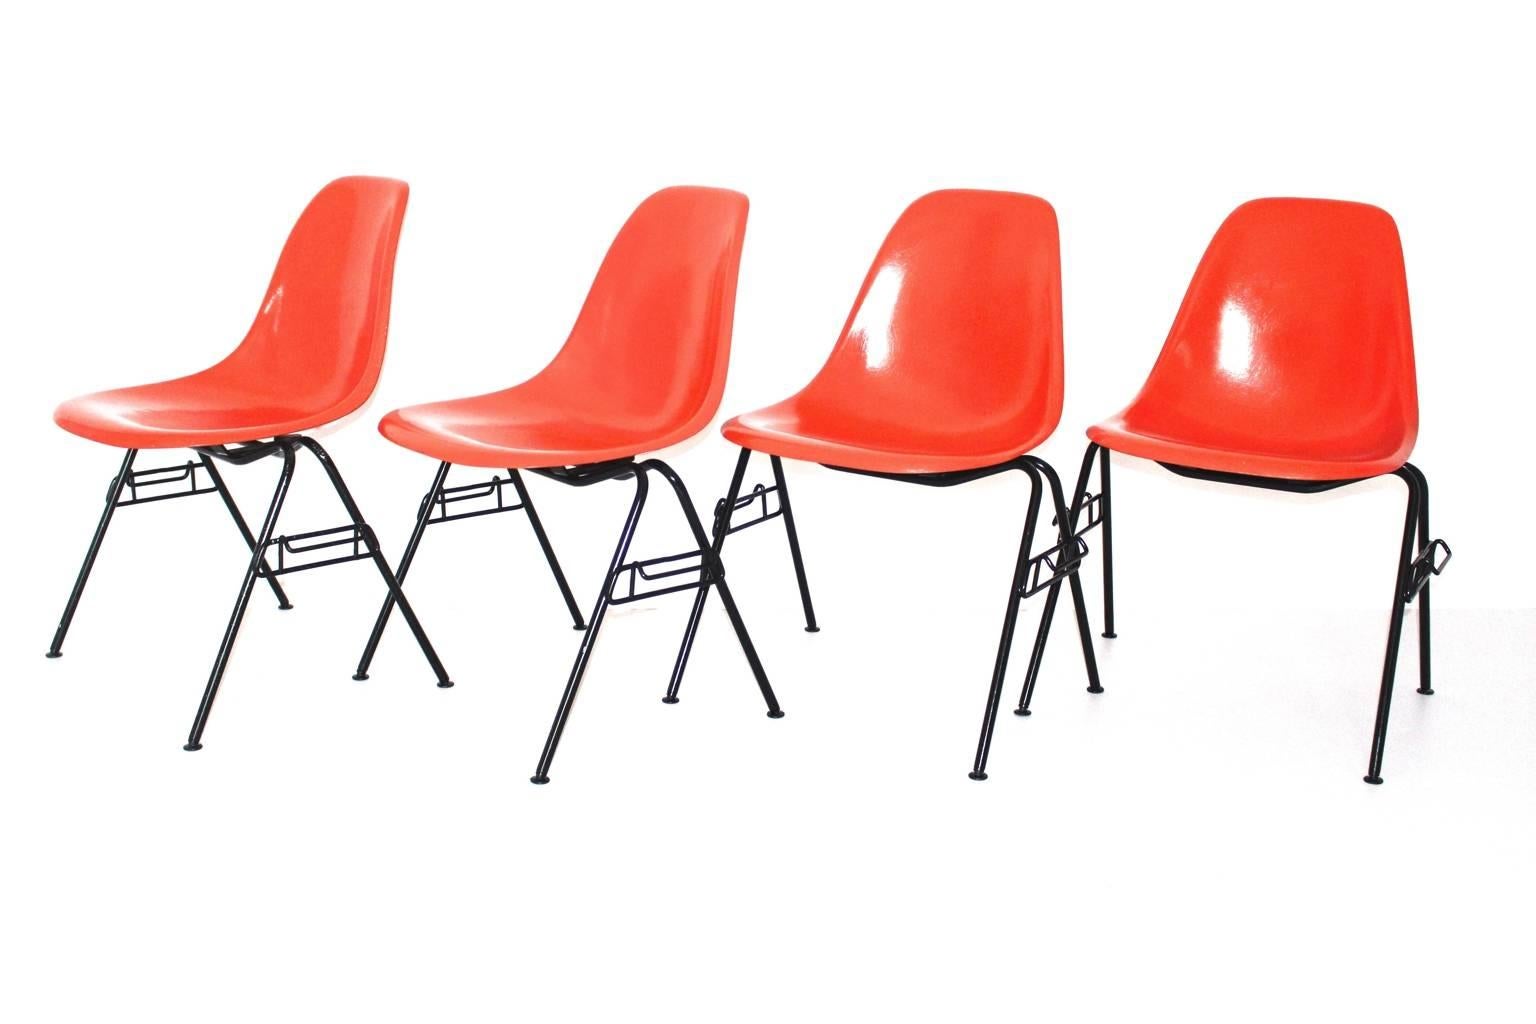 Ensemble original de 4 chaises de salle à manger de Charles et Ray Eames des années 1950.
Le nom du modèle de chaise de salle à manger est le modèle DSS - N, qui a été conçu par Ray et Charles Eames dans les années 1950 et produit par Hermann